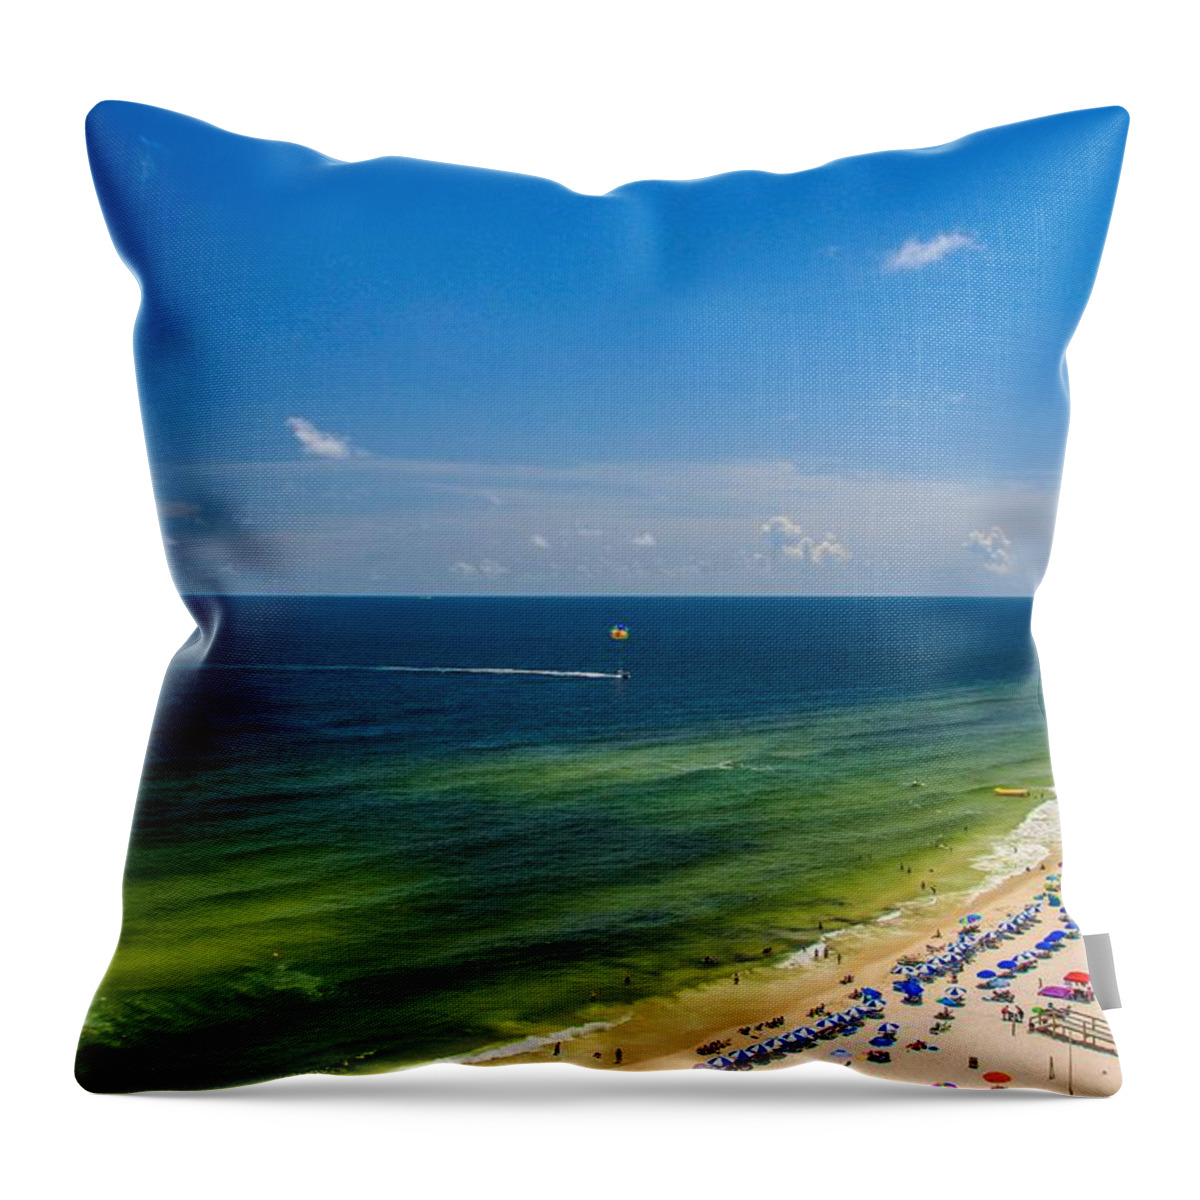 Beach Throw Pillow featuring the photograph Perdido Key Beach by Richie Parks